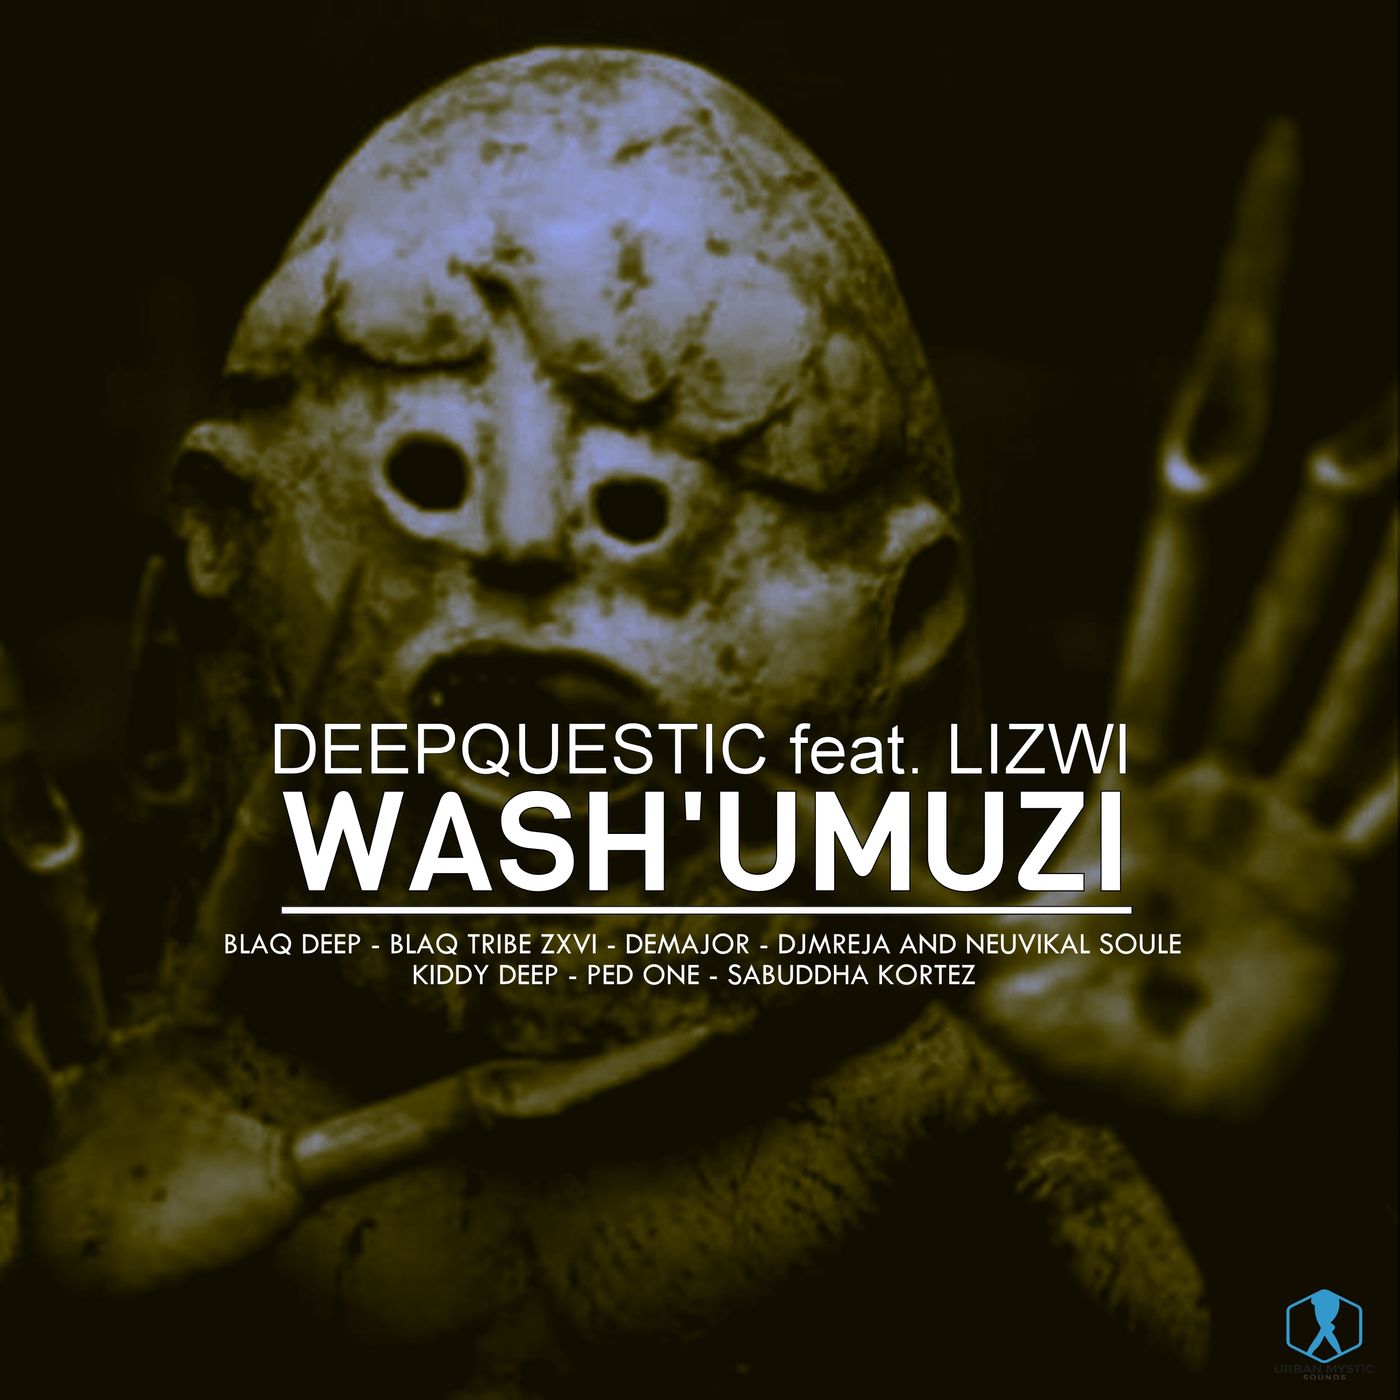 DeepQuestic ft Lizwi - Wash'umuzi (Incl. Remixes) / Urban Mystic Sounds